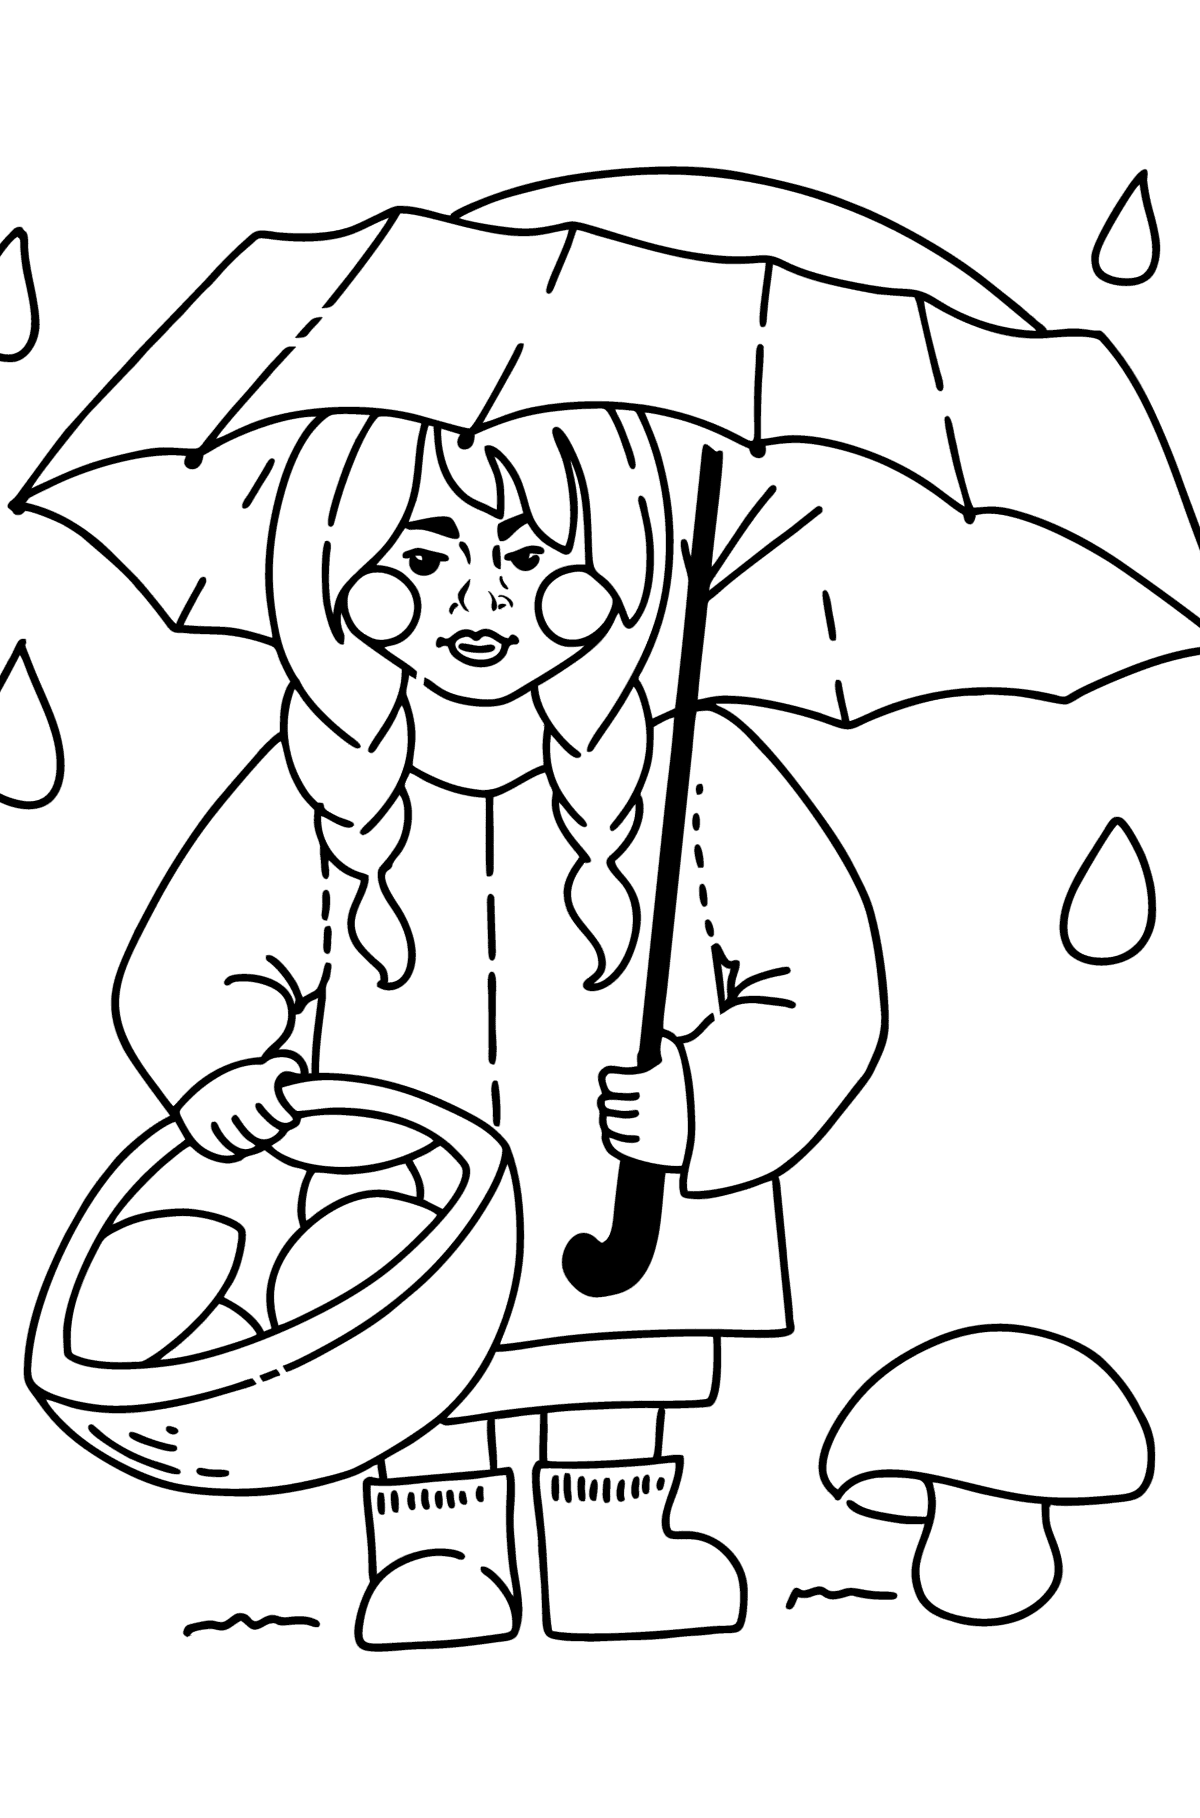 Kolorowanka - Dziewczyna zbierająca grzyby - Kolorowanki dla dzieci